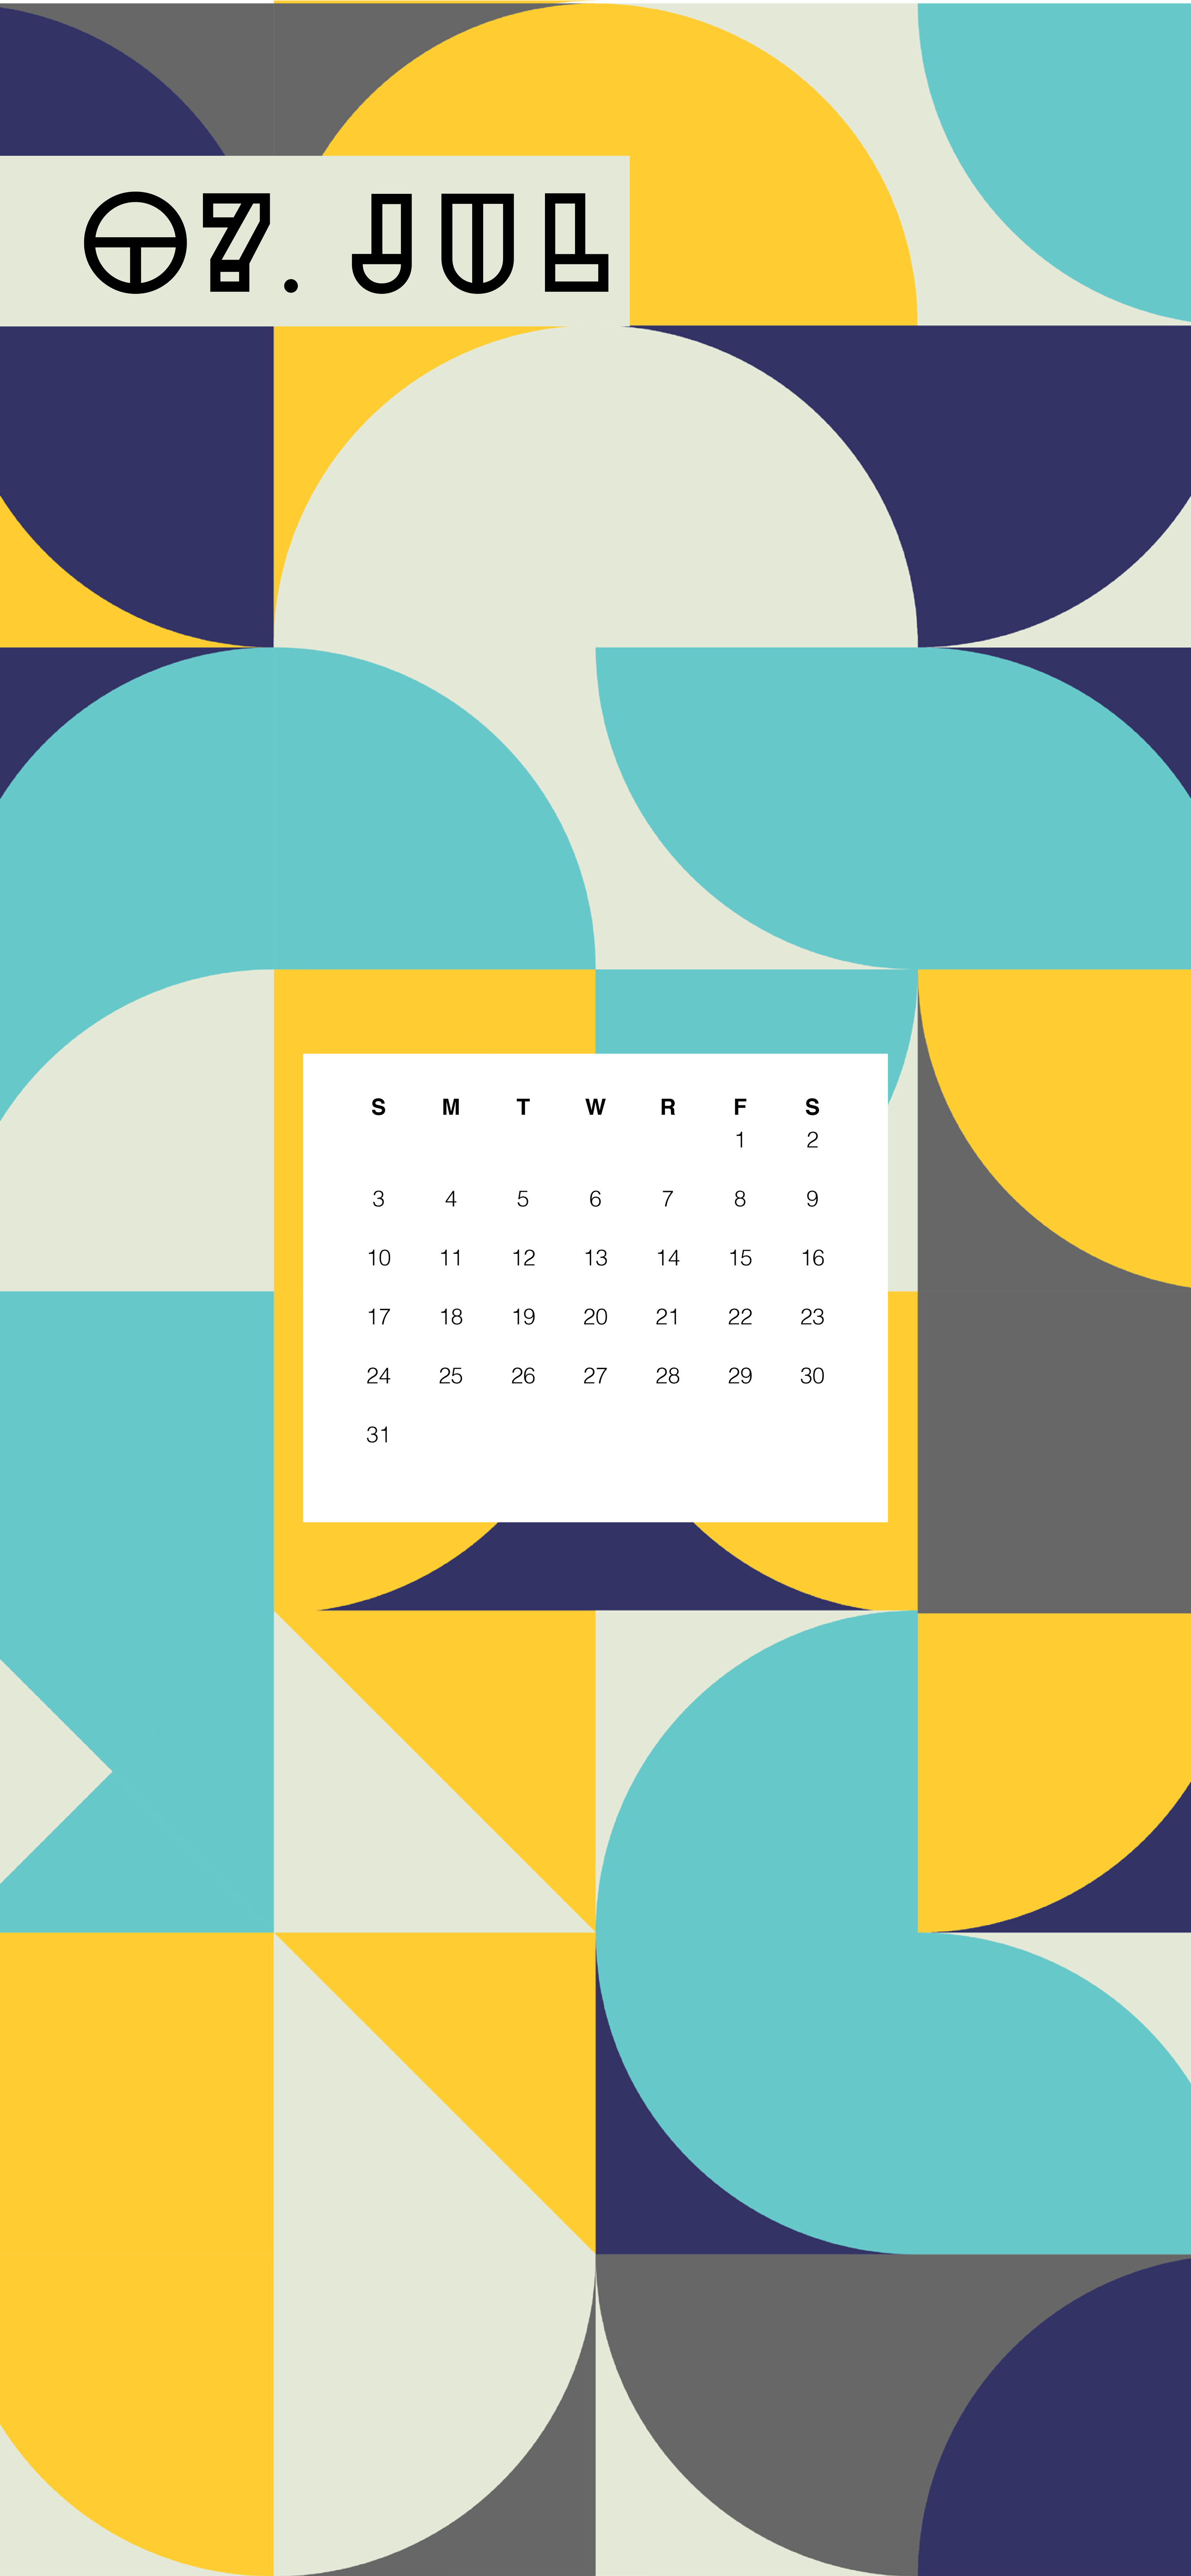 July 2022 Calendar Wallpapers HD Free download  PixelsTalkNet